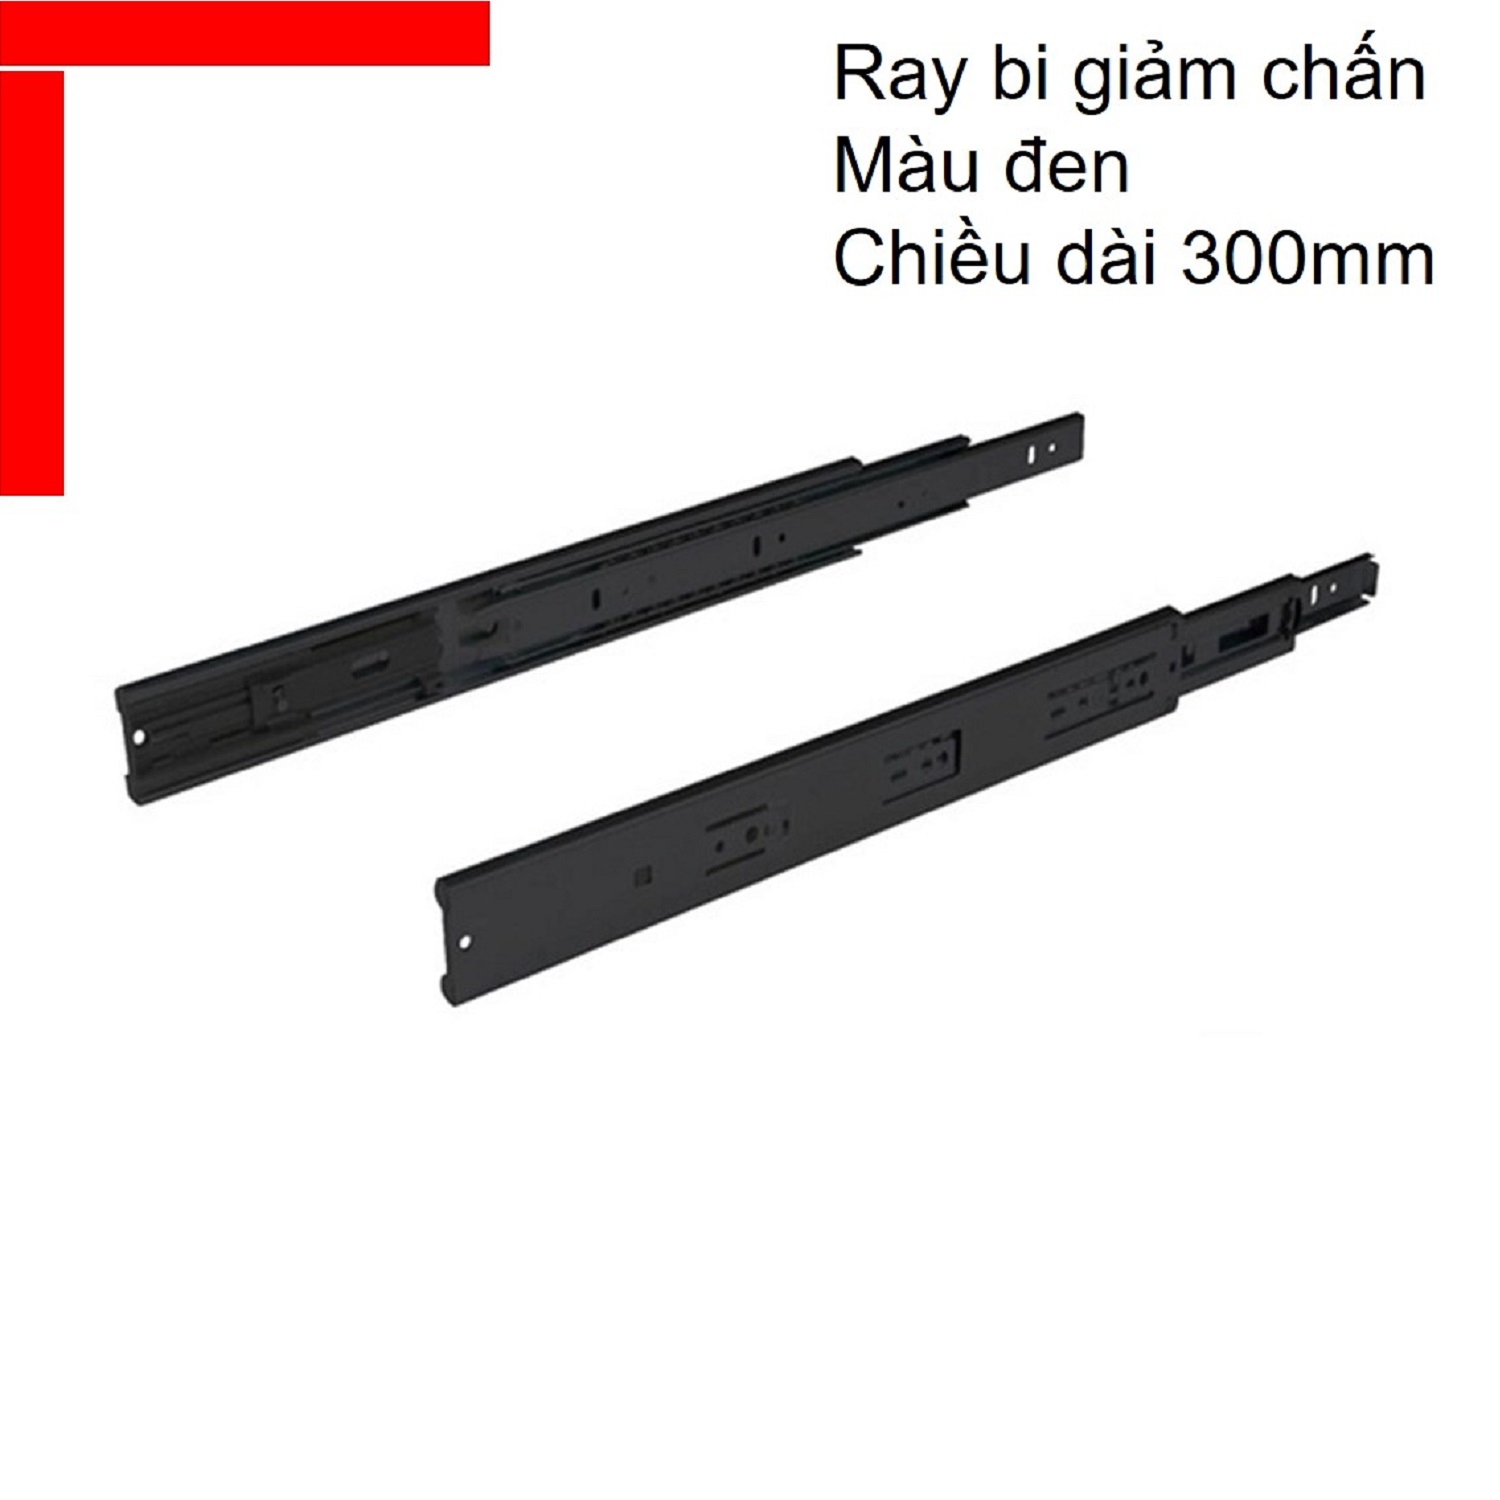 Ray bi giảm chấn Hafele chiều dài 300mm màu đen 494.02.071